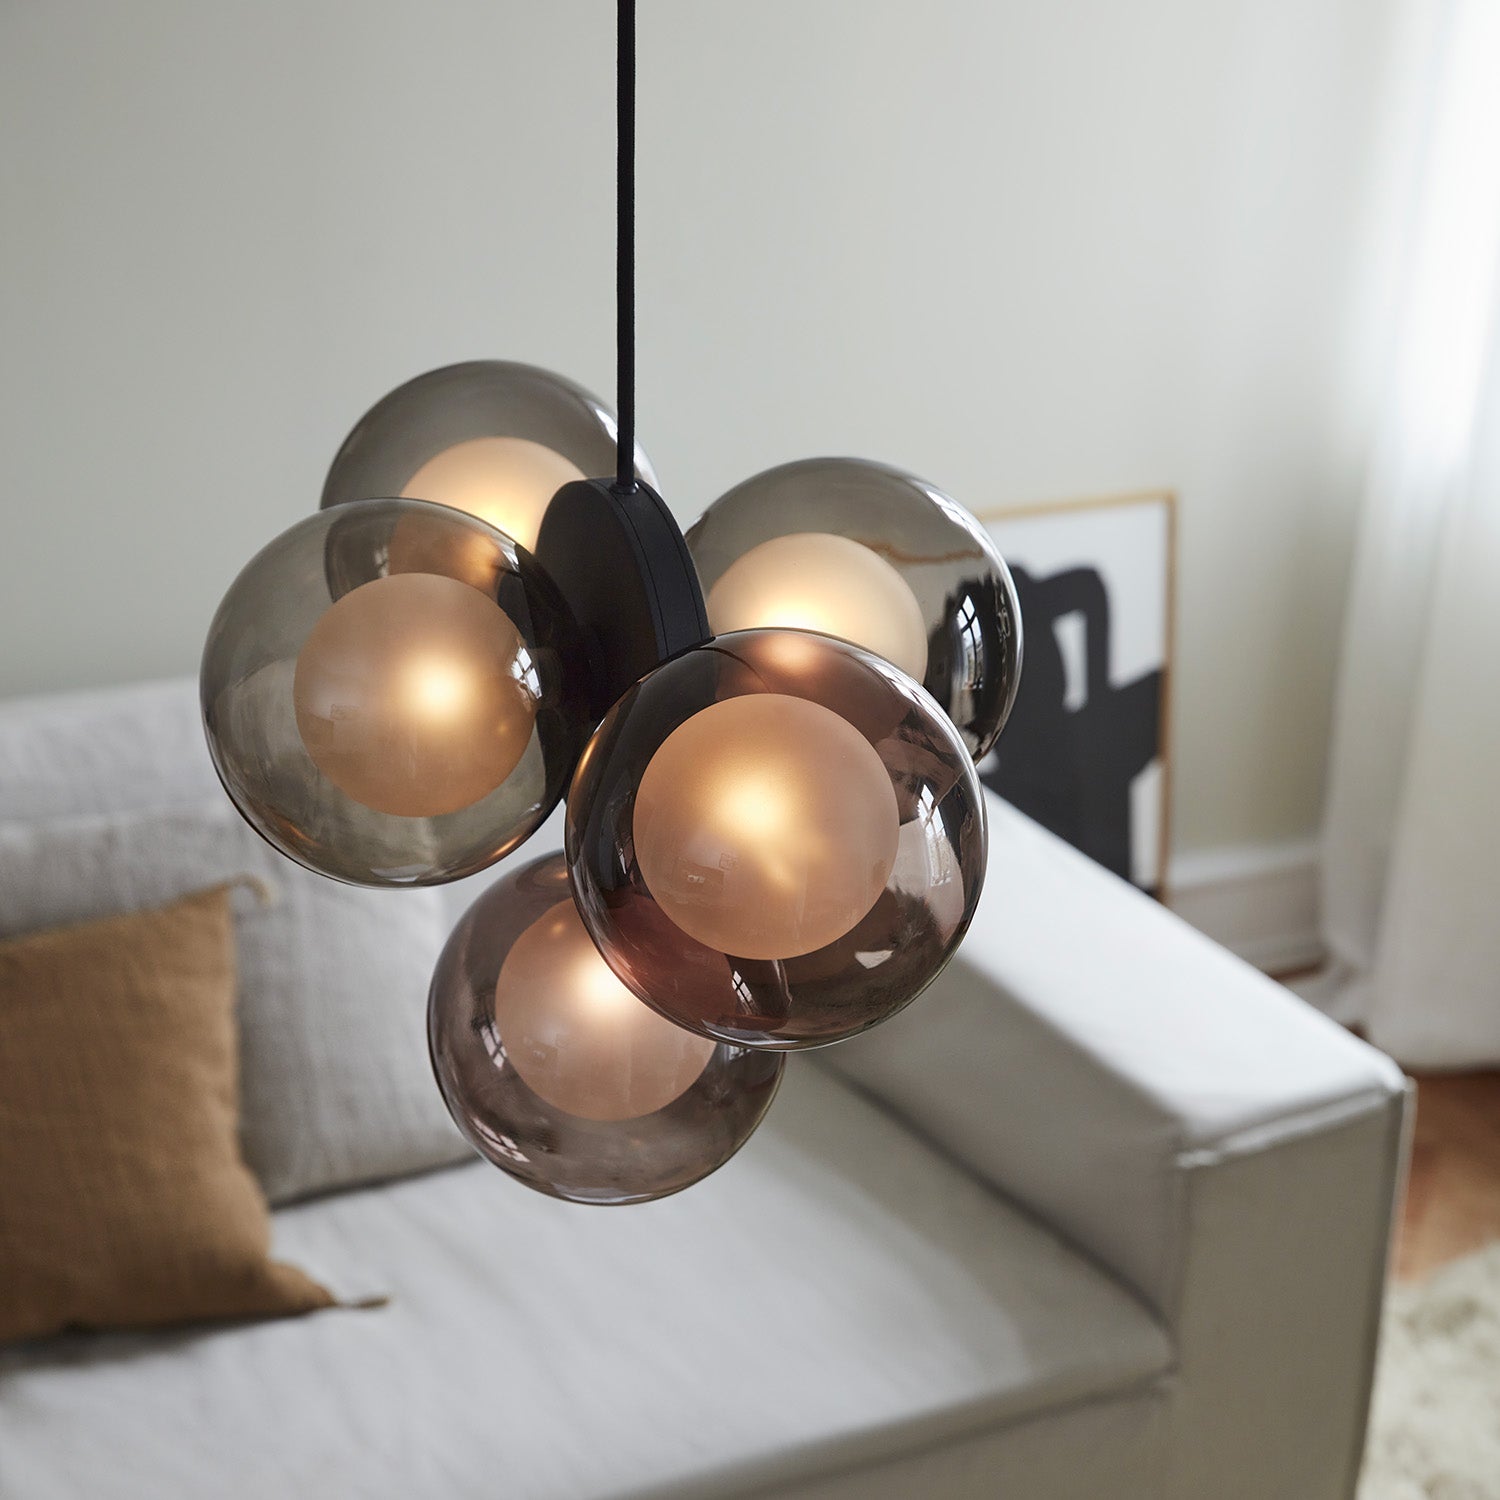 DISCUS Pendant - Black cluster pendant lamp with designer glass balls